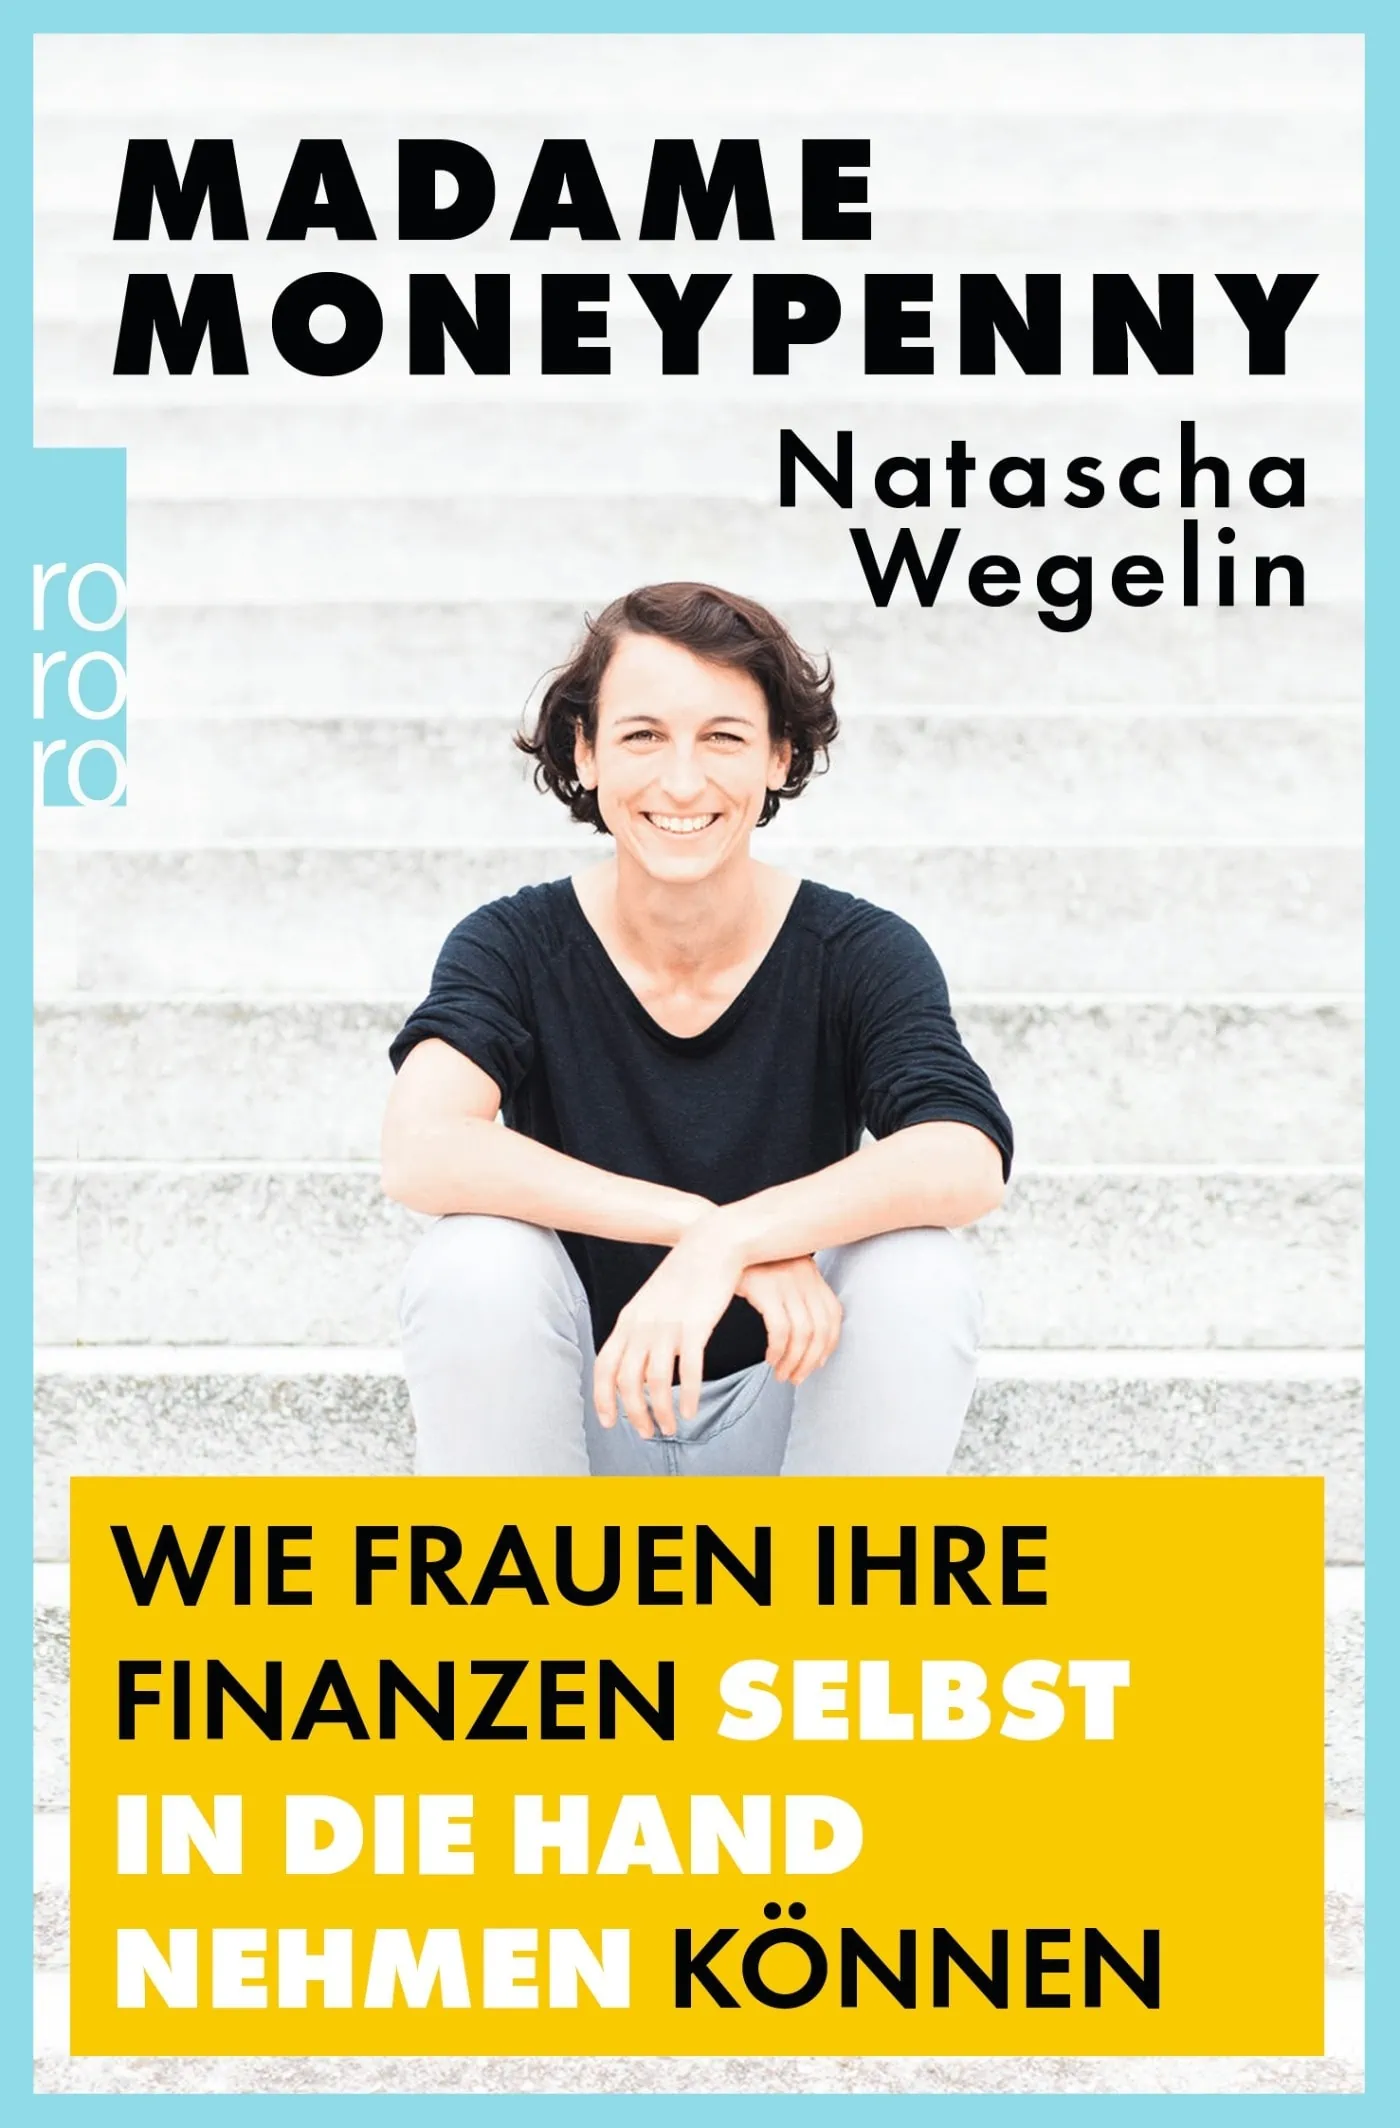 Finanzcoaching für Frauen: Das Buch von Natascha Wegelin aka Madame Moneypenny // HIMBEER